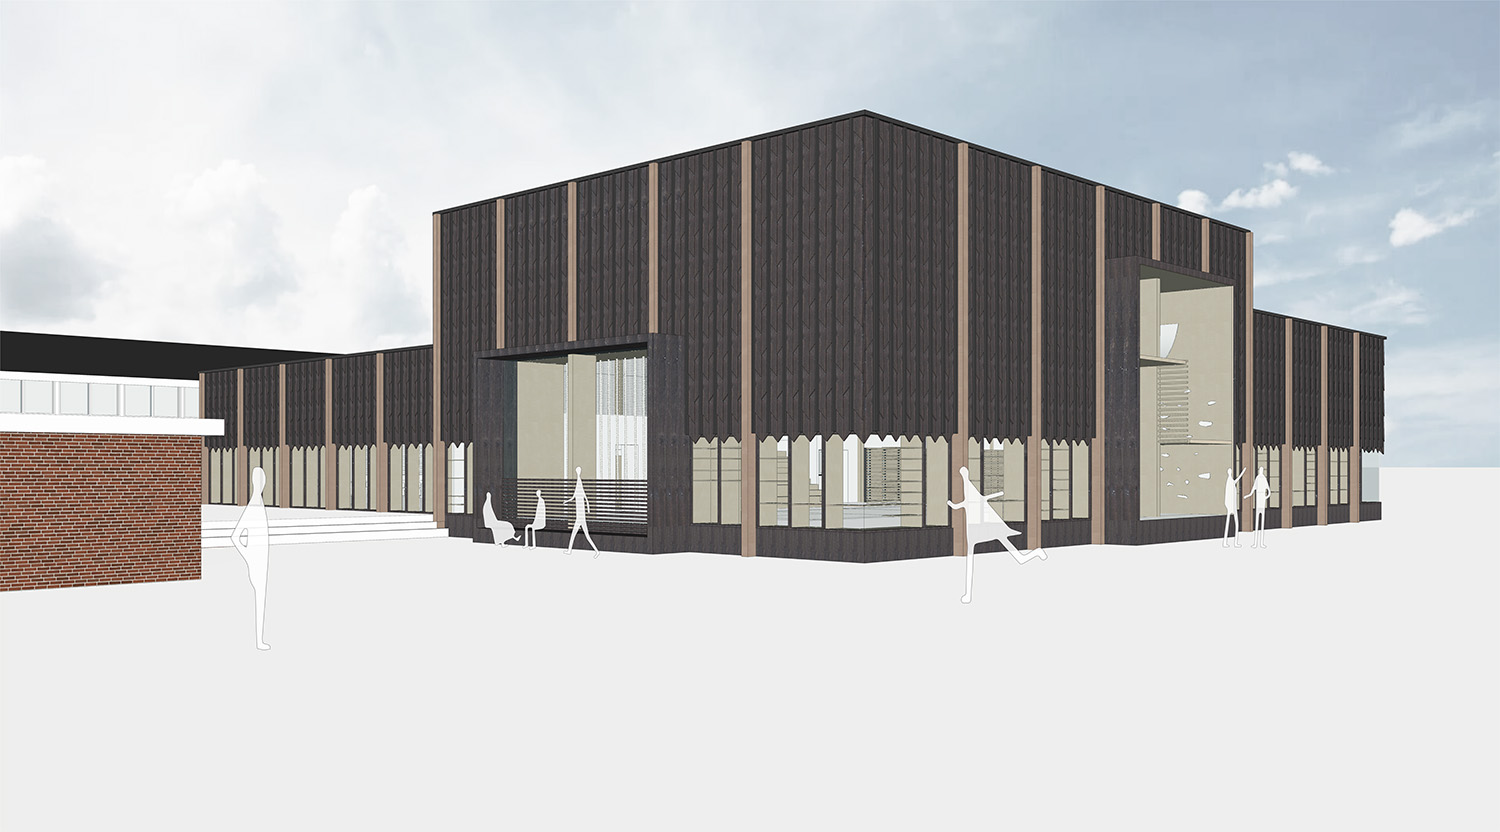 Skolens nye bygninger forventes at stå klar i august 2021. Illustration: CREO